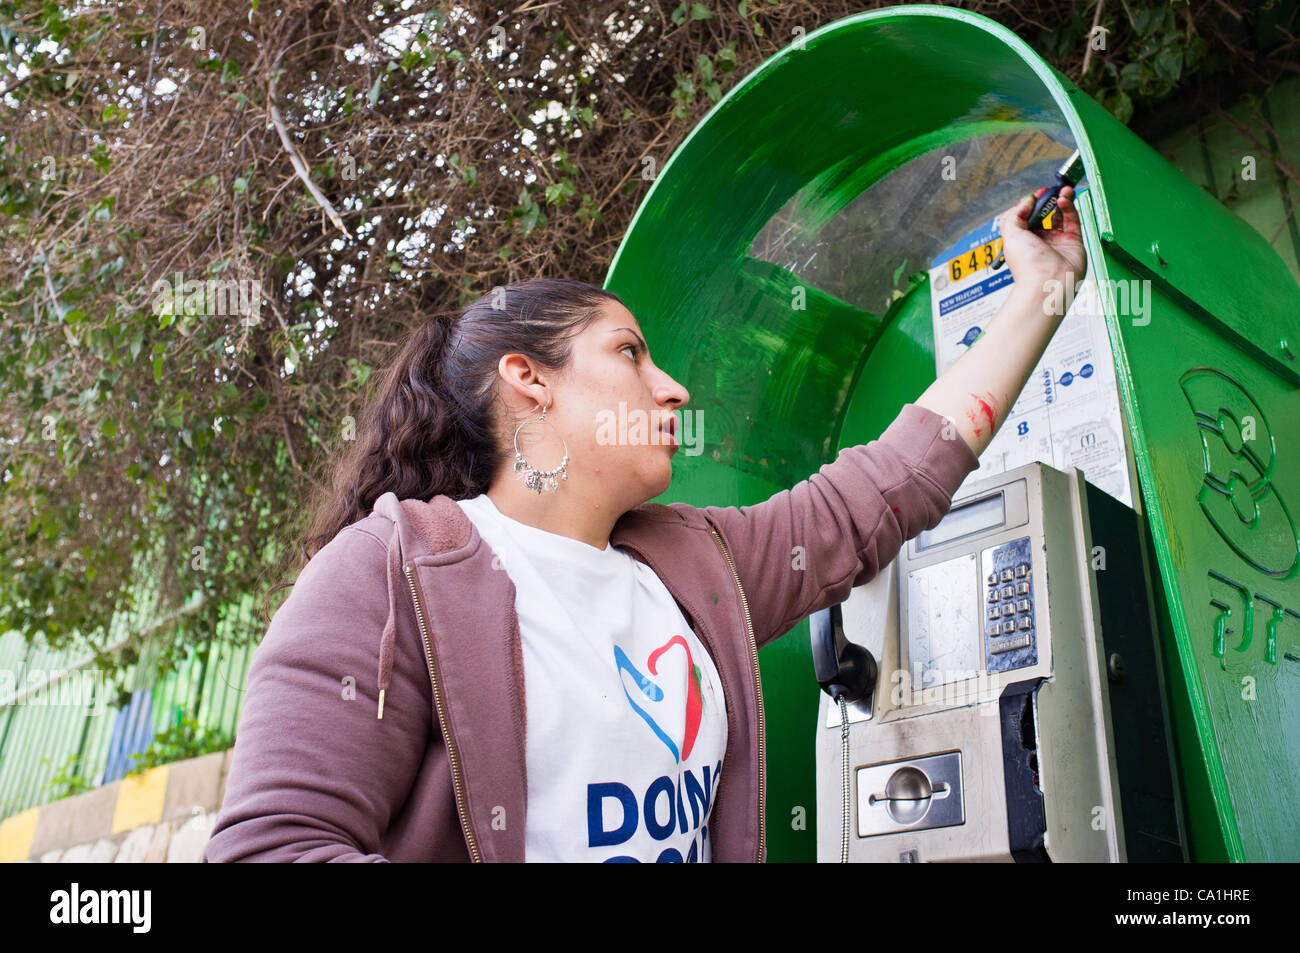 Ein junger Student malt eine öffentliche Telefonzelle in einem 48 Projekte durchgeführt, in der Stadt, mit einer Rekordzahl von 6.000 Freiwilligen am"guten Taten" in ein nationales Projekt, das Arbeit für die Gemeinschaft fördert. Jerusalem, Israel. 20. März 2012. Stockfoto